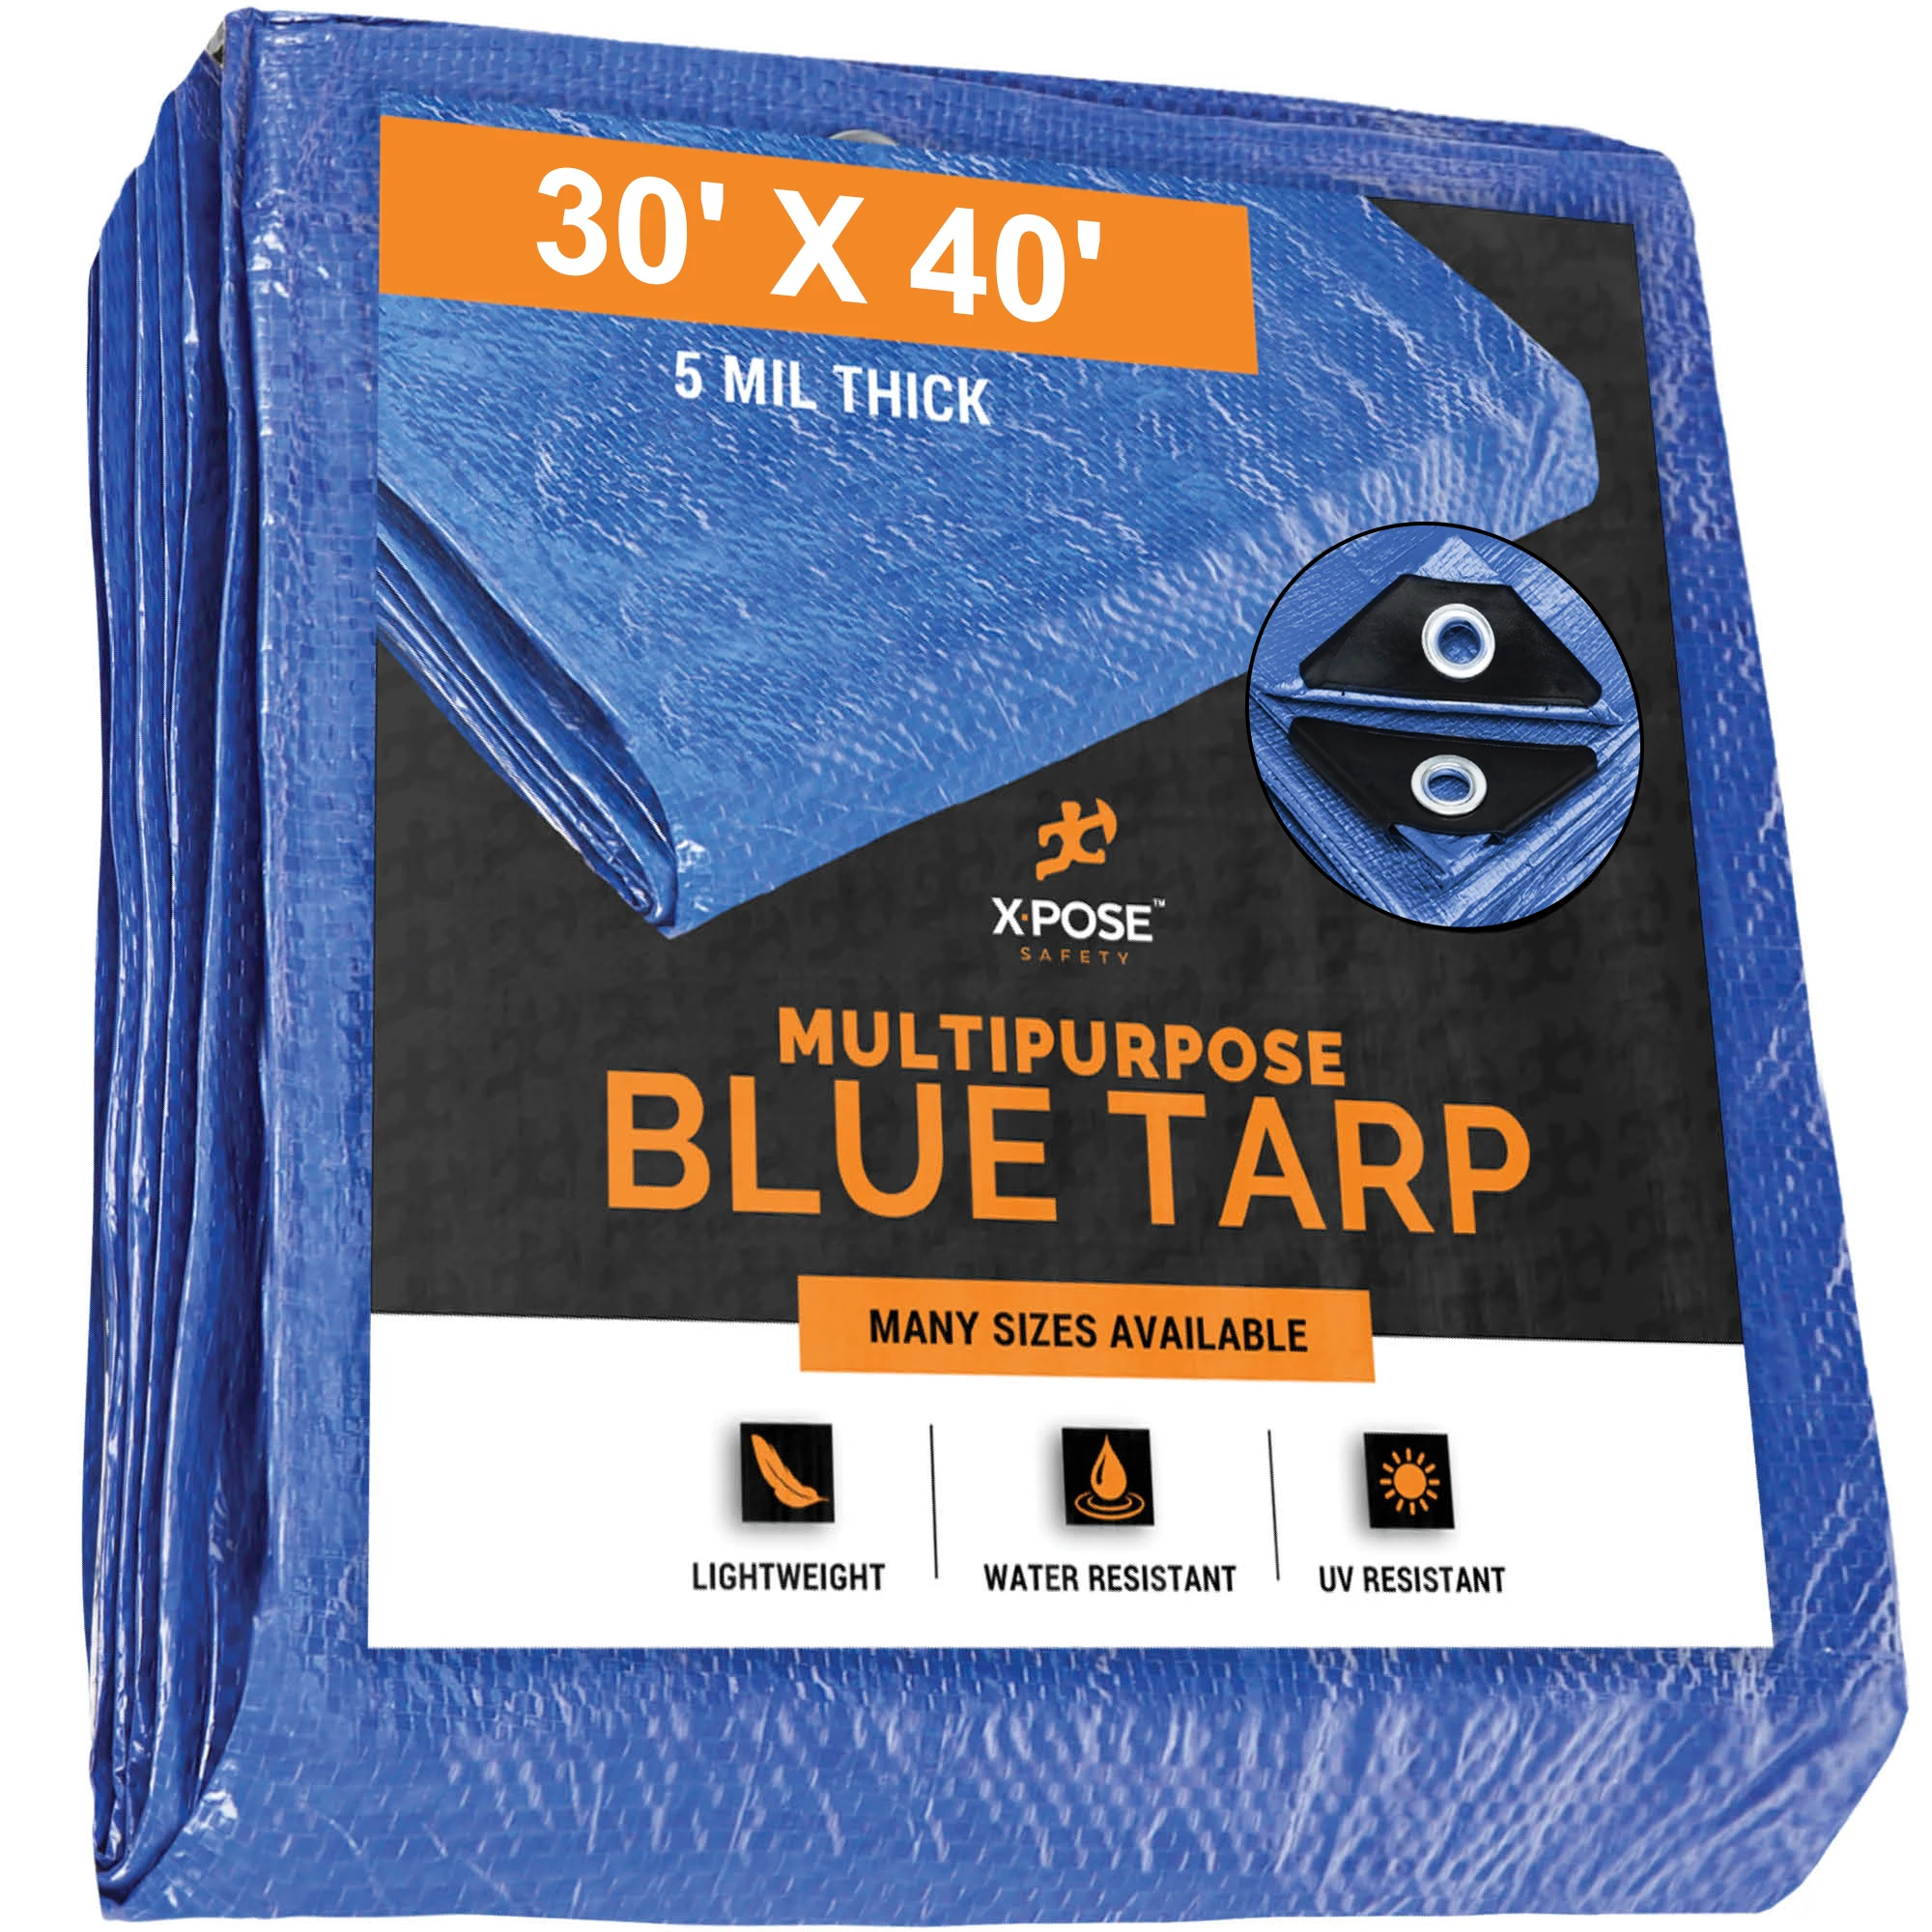 better-blue-poly-tarp-15-x-30-многоцелевой-защитный-чехол-легкий-прочный-водонепроницаемый-устойчивый-к-атмосферным-воздействиям-толщина-5-мил